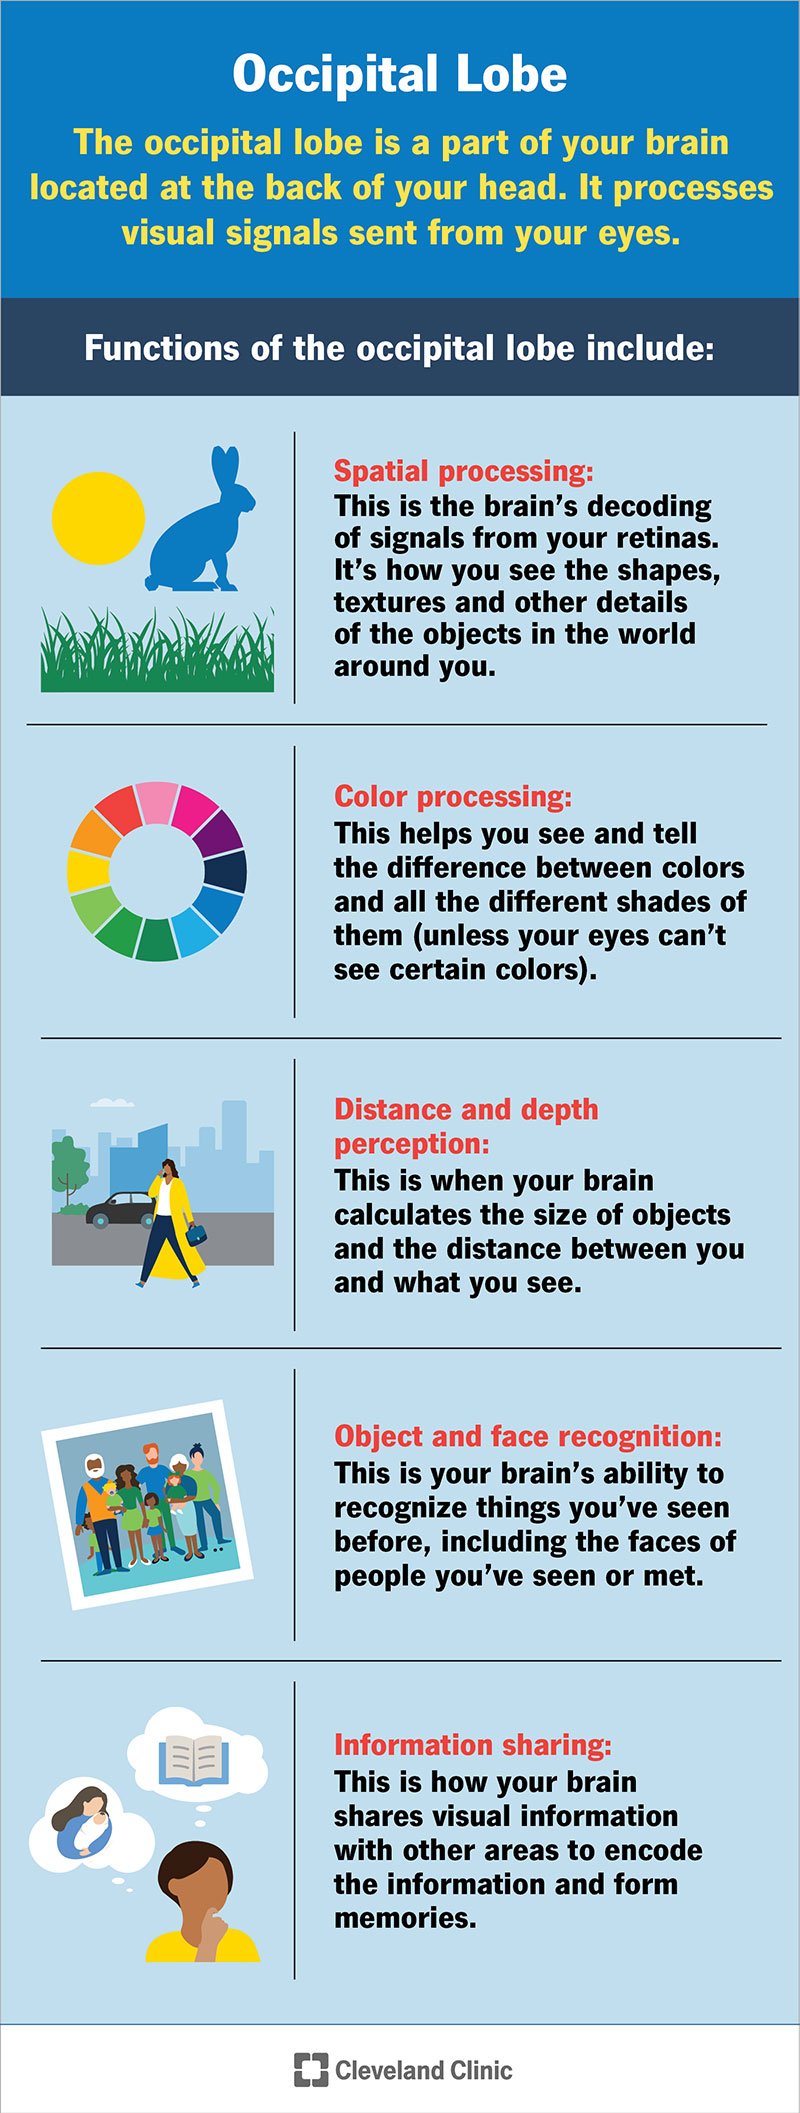 Kuklasagaras töötleb seda, mida teie silmad näevad, sealhulgas kujundeid, värve, kaugust ja palju muud.  See teisendab teie silmade signaalid vormi, mida teie aju saab kasutada.